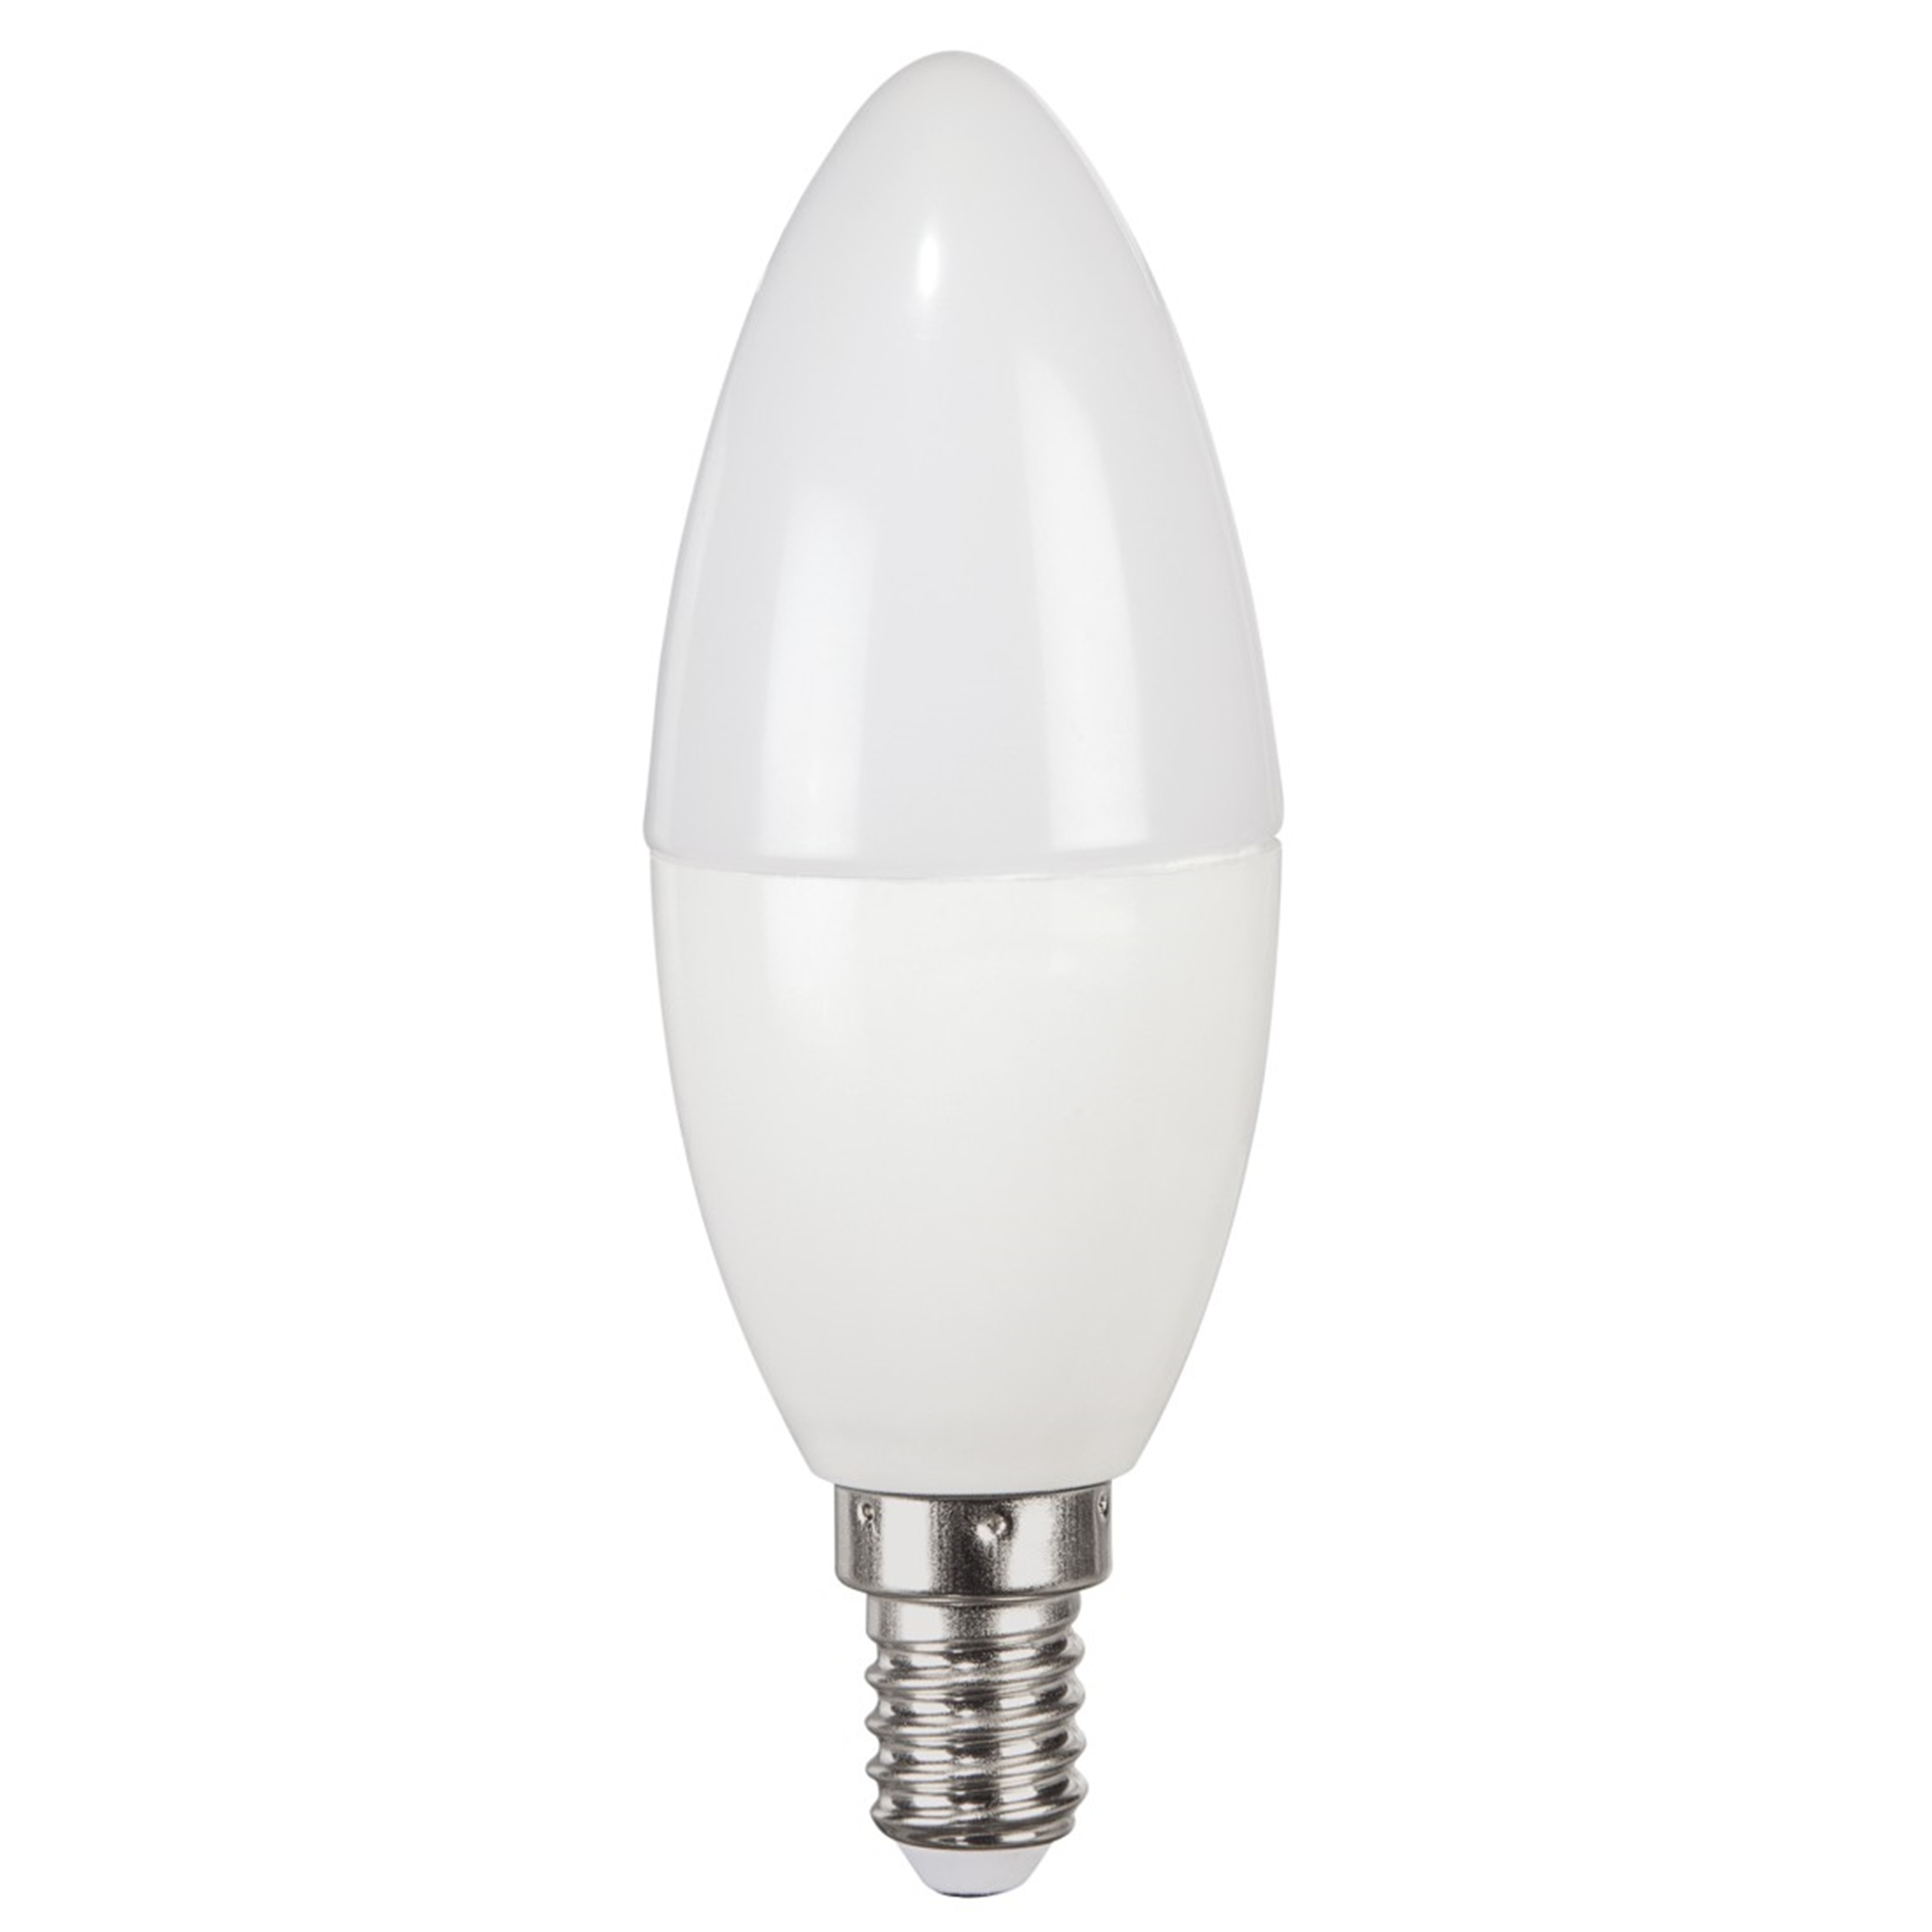 XAVAX E14, 470lm ersetzt Warmweiß LED-Lampe E14 40W